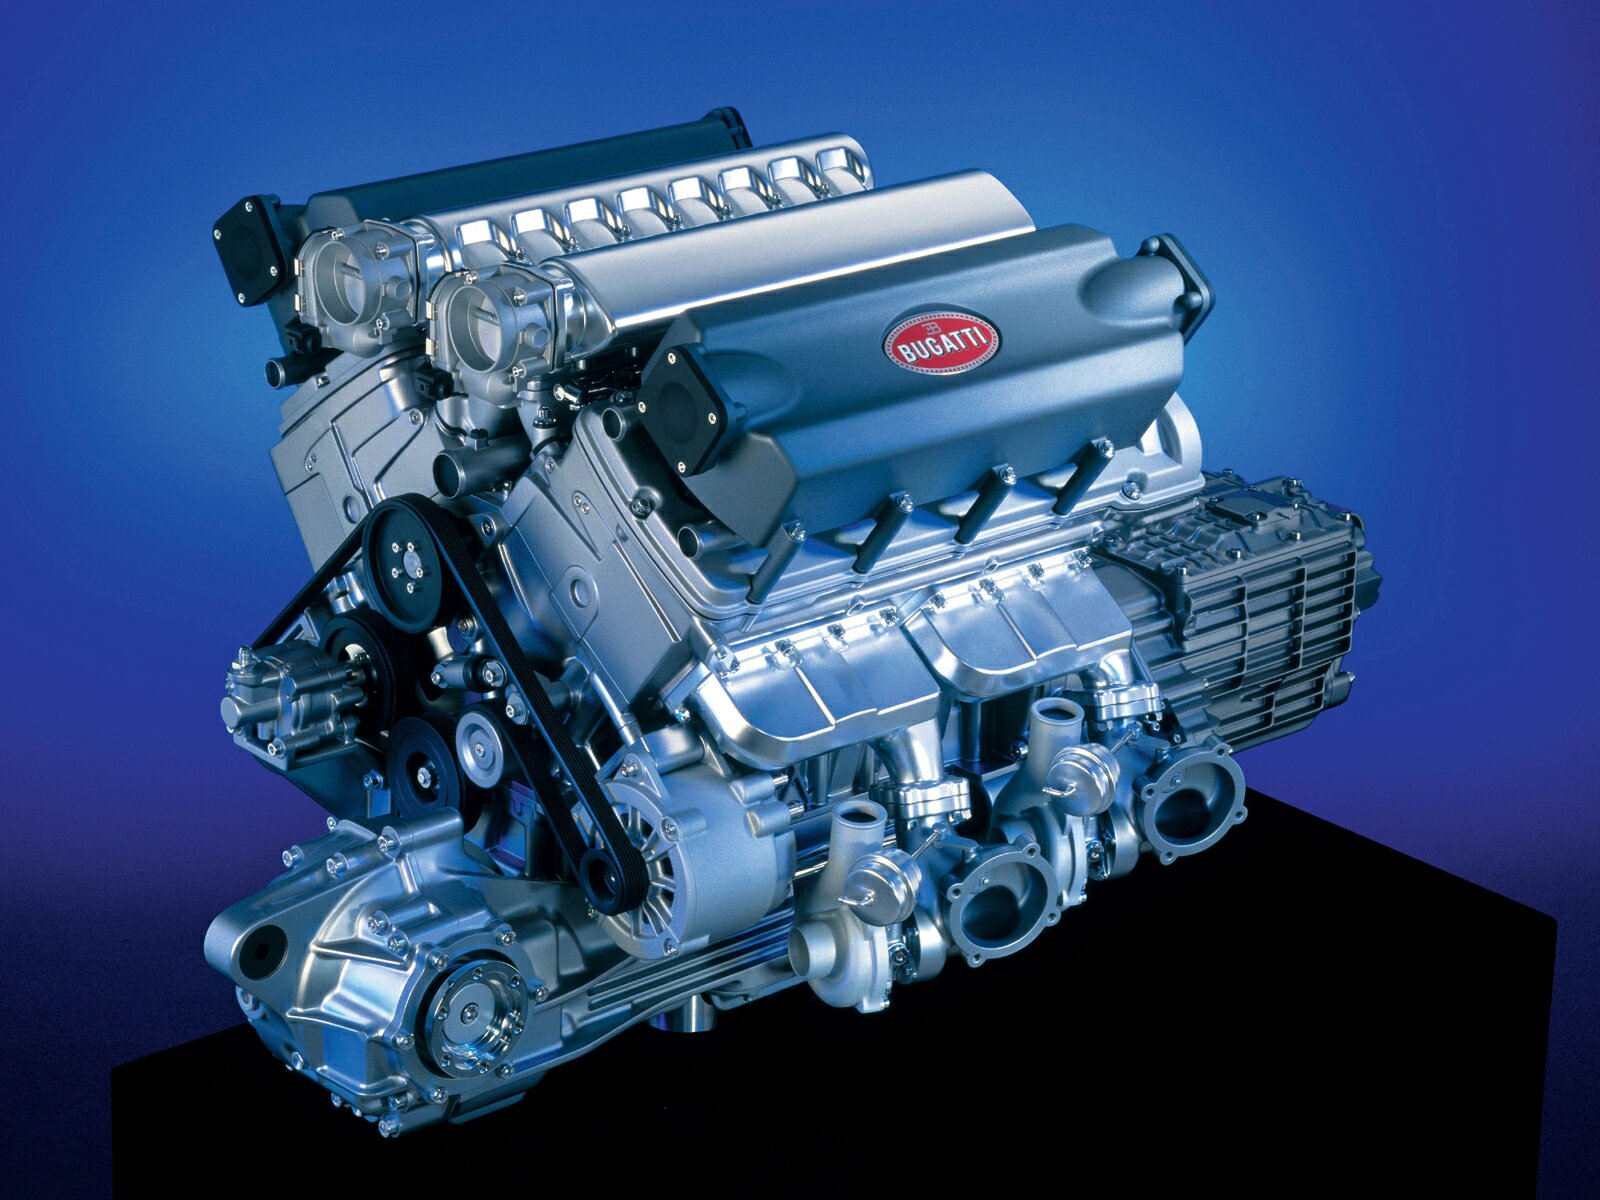 Chrysler diesel v8 engines #4